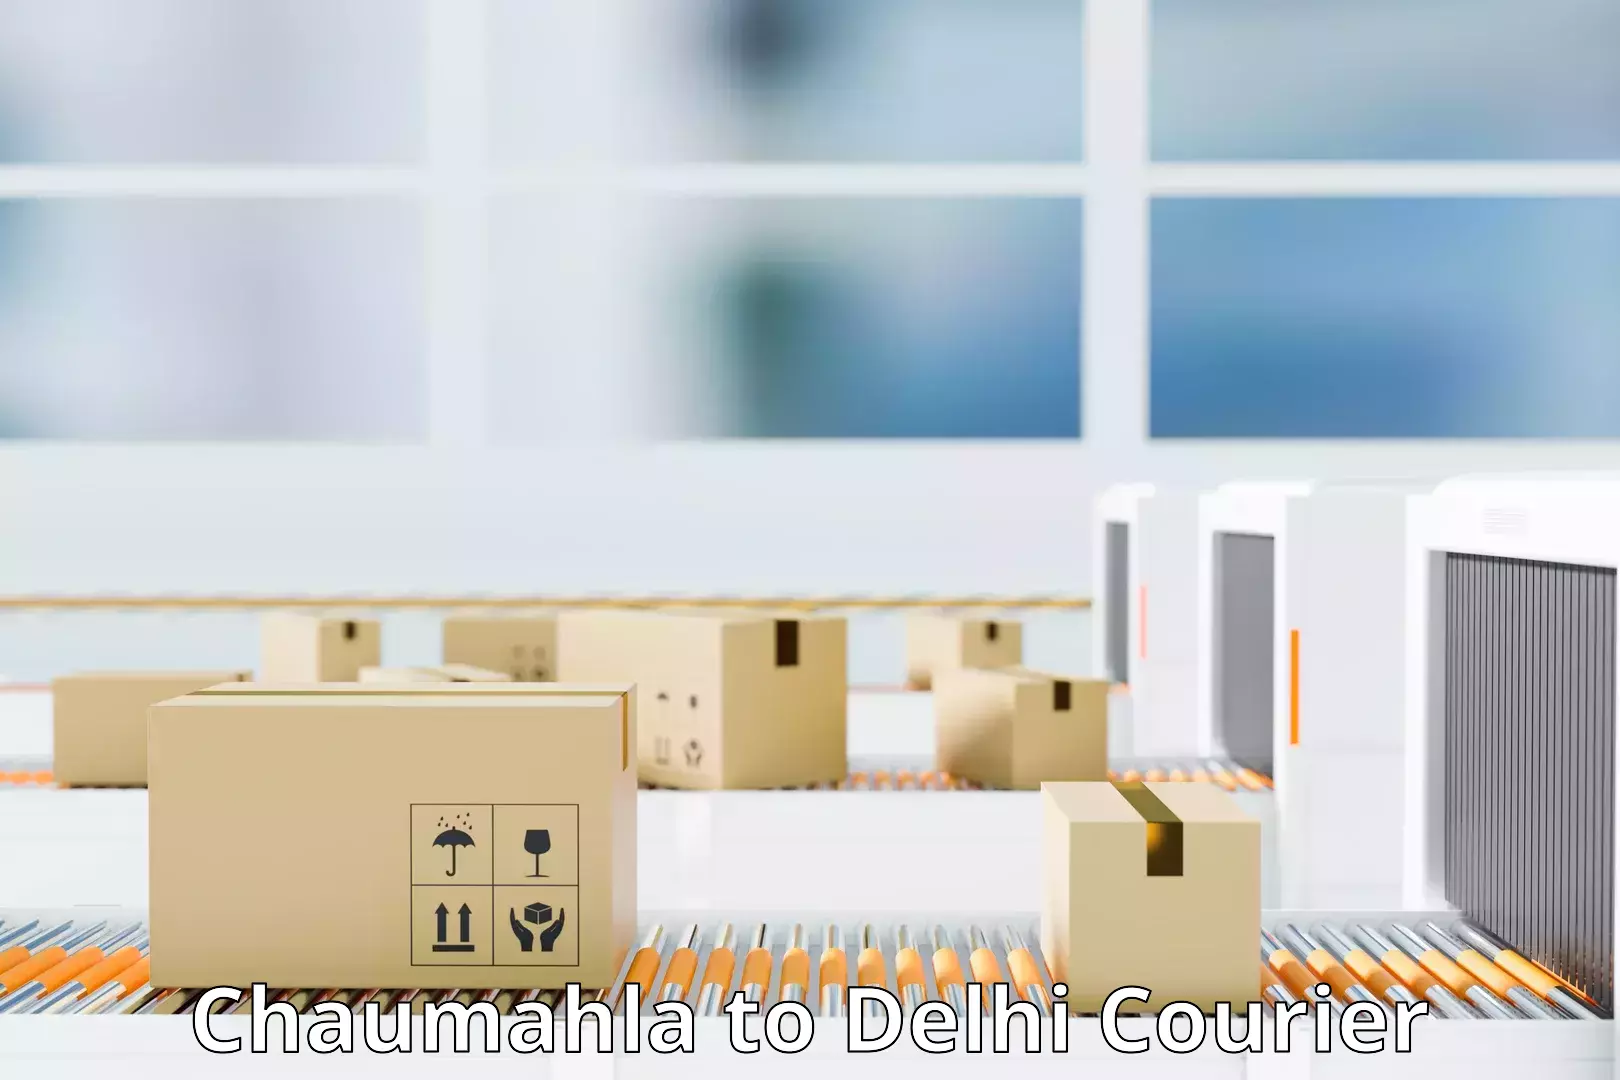 Logistics solutions Chaumahla to East Delhi